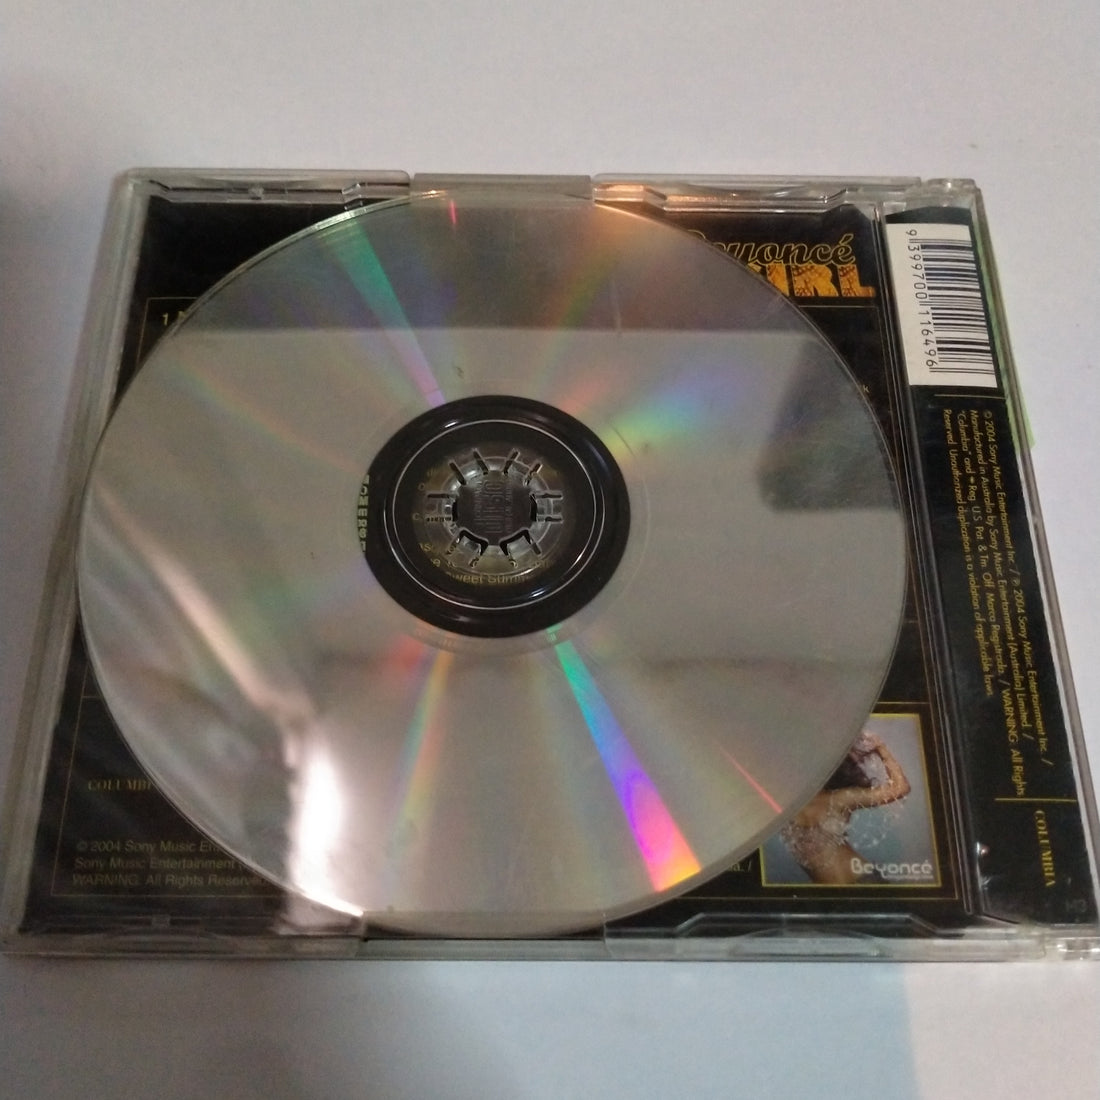 Beyoncé - Naughty Girl (CD) (VG)